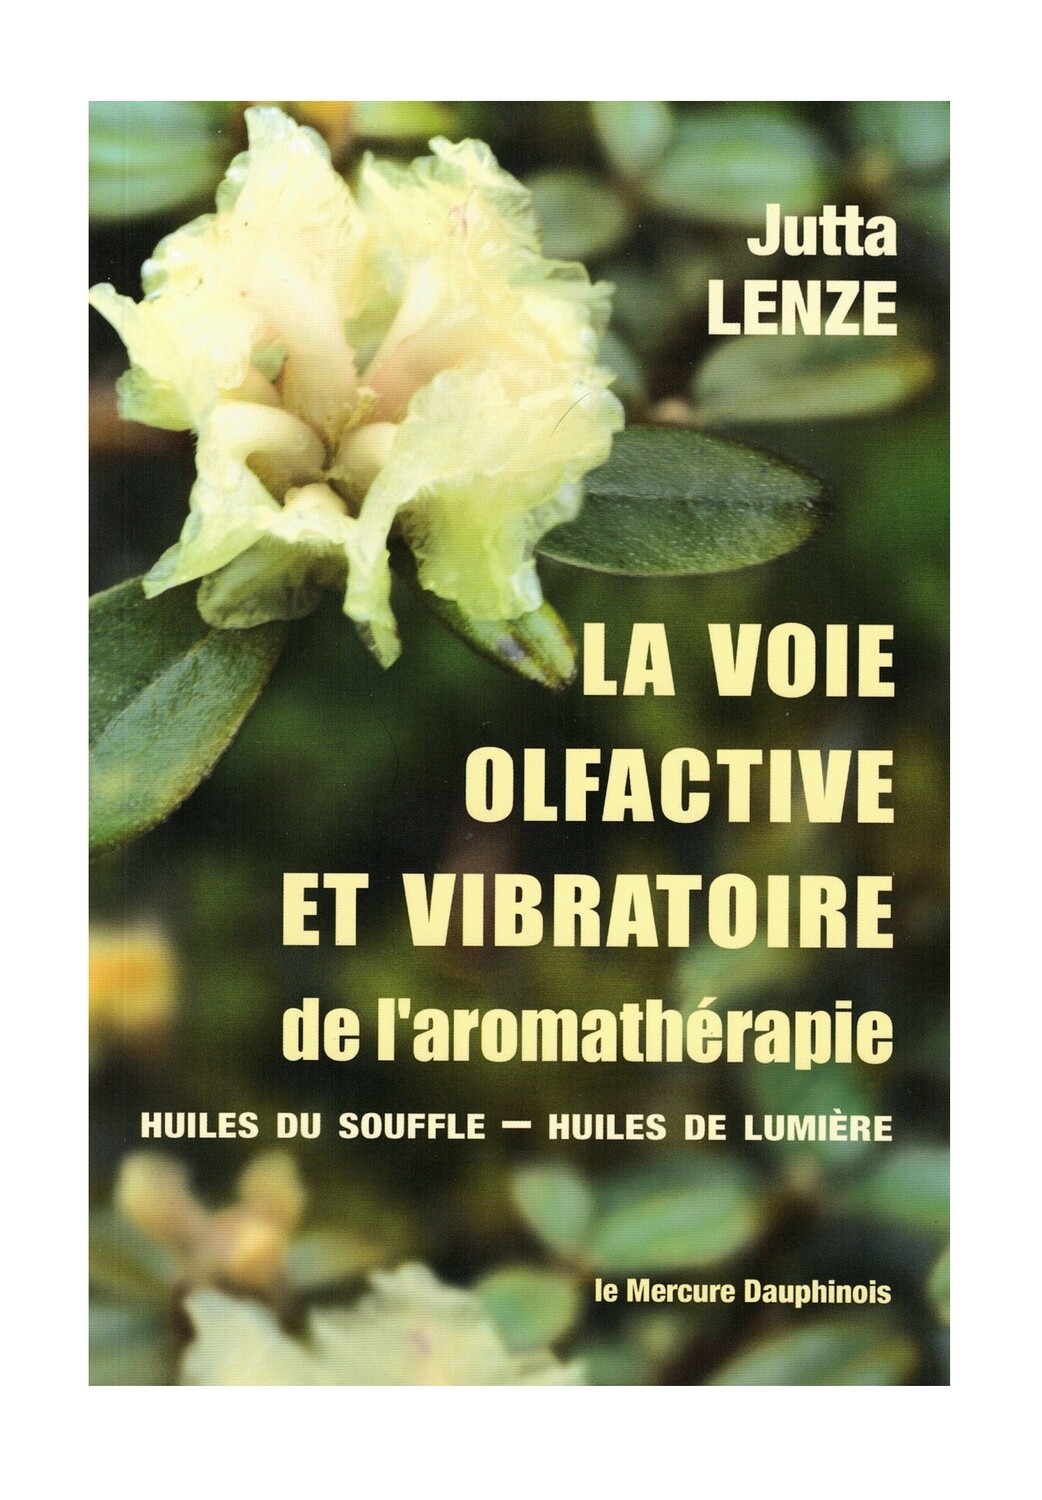 La voie olfactive et vibratoire de l'aromathérapie